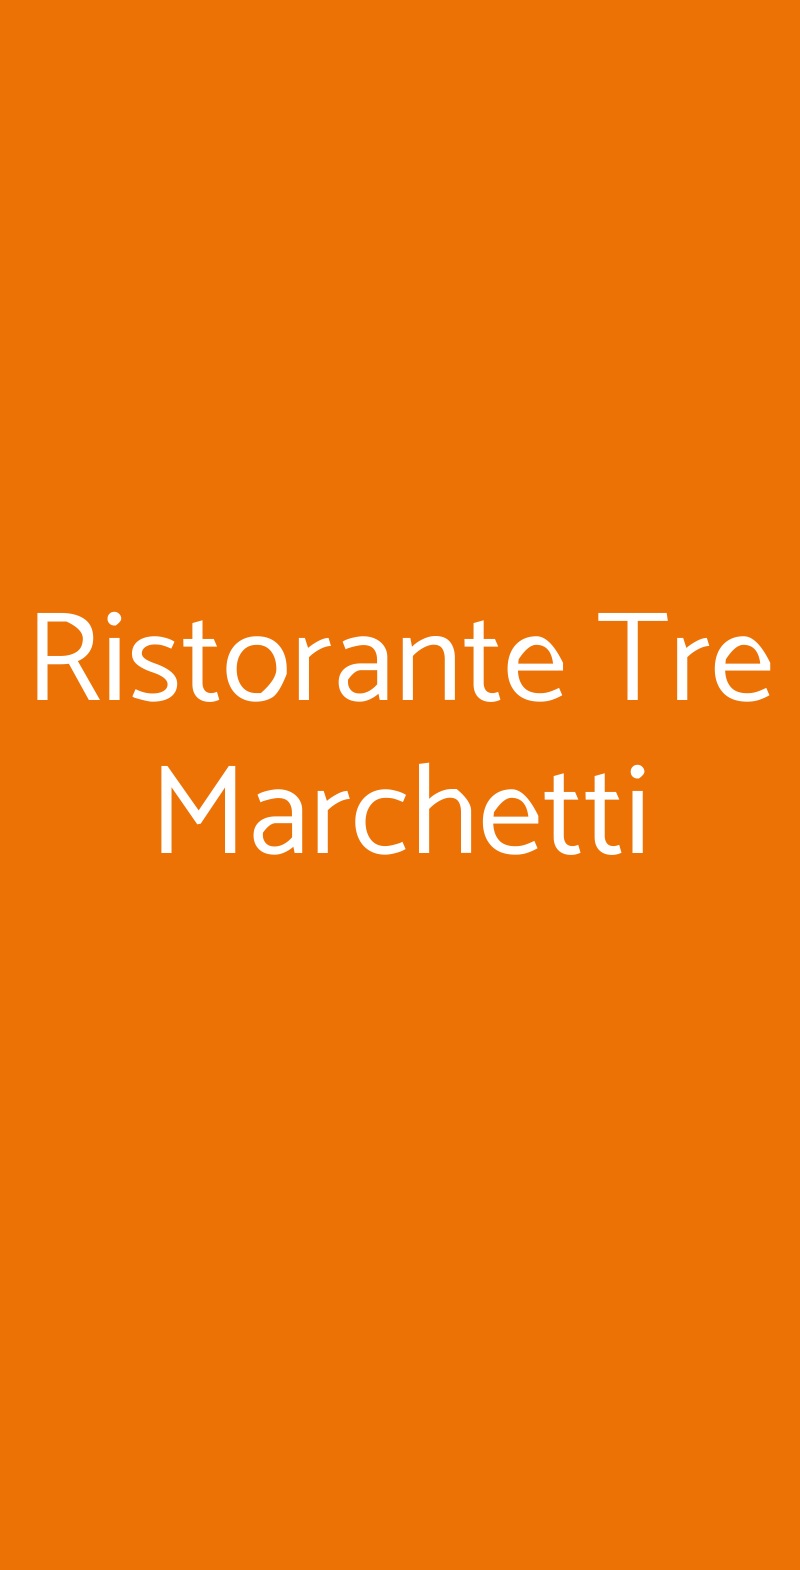 Ristorante Tre Marchetti Verona menù 1 pagina